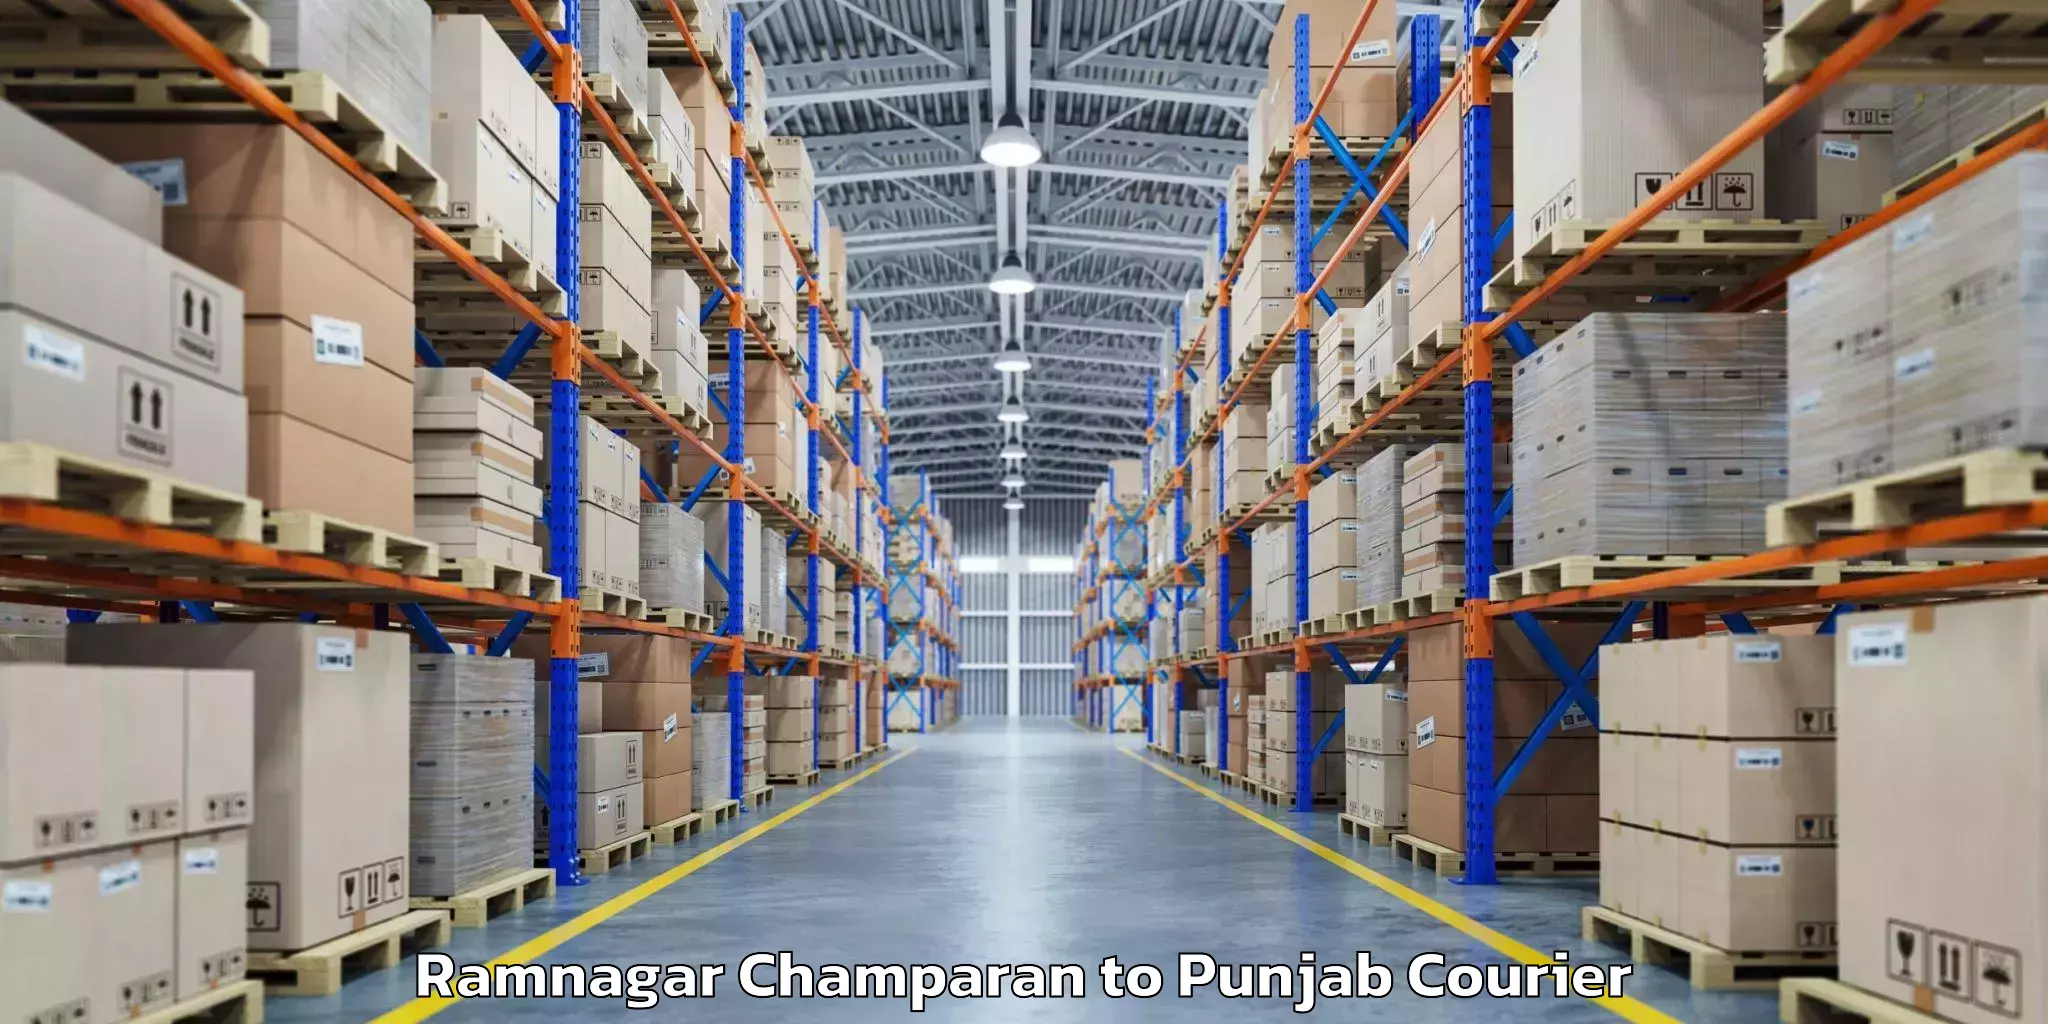 Baggage transport technology Ramnagar Champaran to Punjab